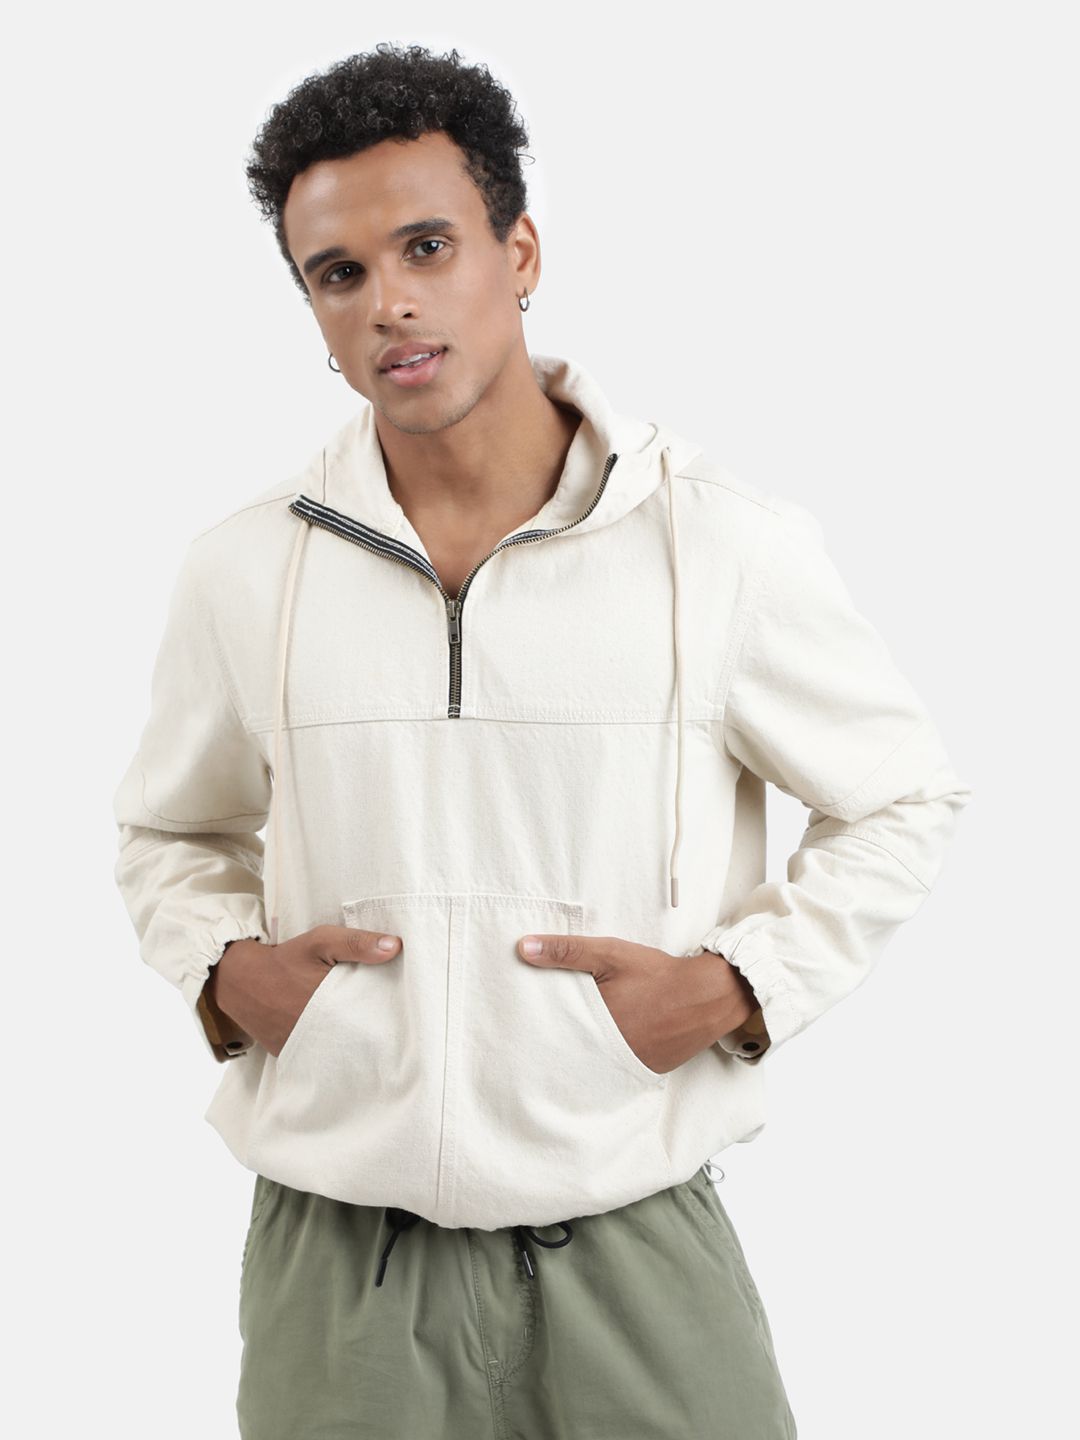     			Bene Kleed Cotton Hooded Men's Sweatshirt - Beige ( Pack of 1 )